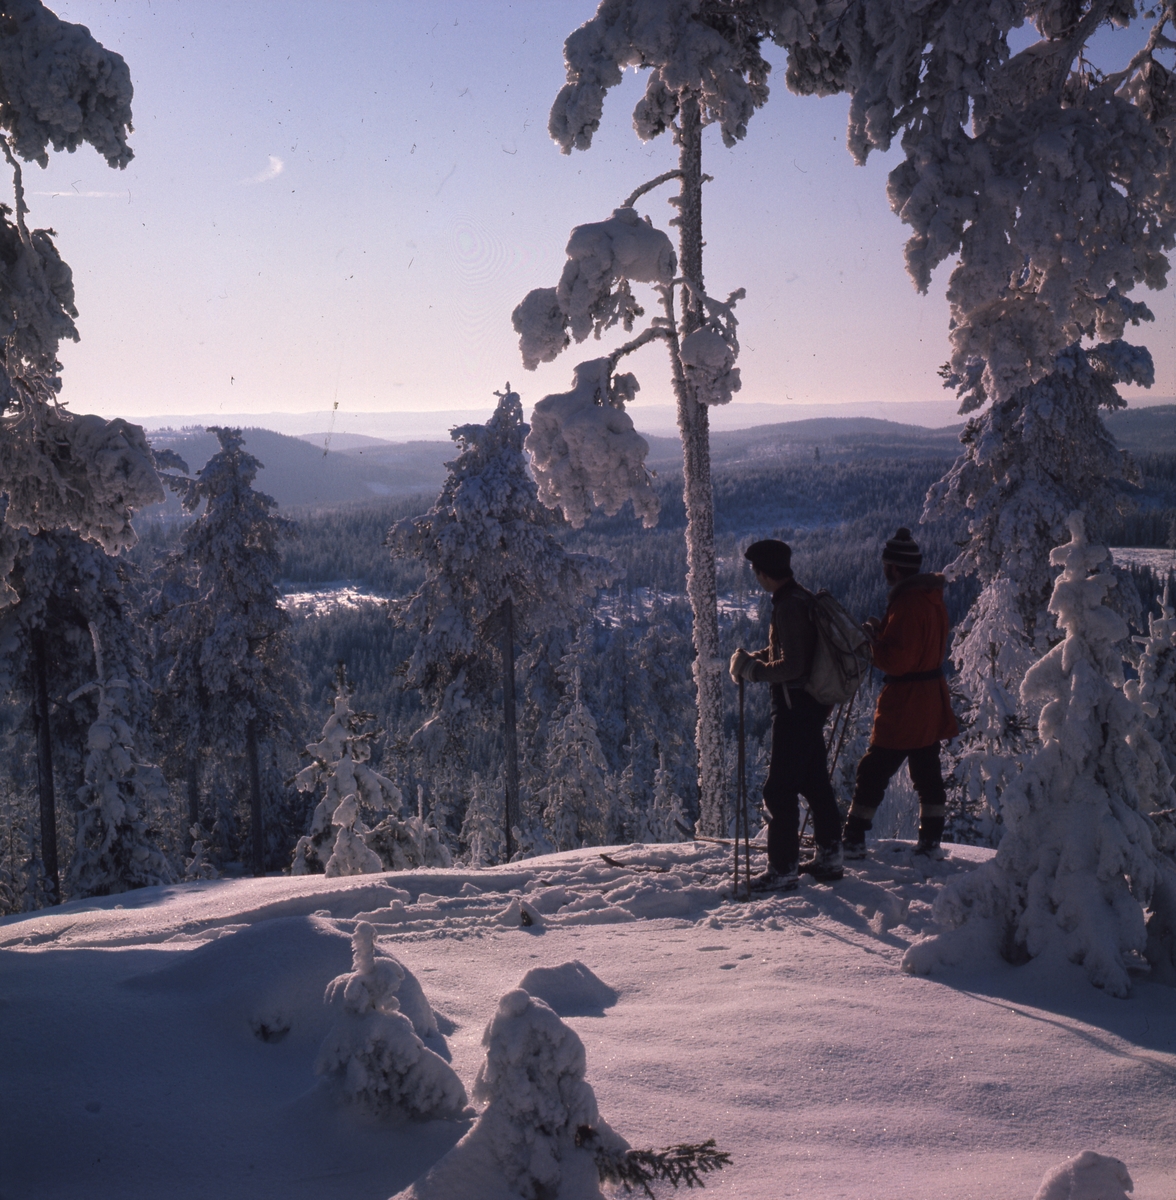 I högvinterskog, Rengsjö. Ett par skidåkare står omgivna av snötyngd skog uppe på en höjd, med vacker utsikt över vinterlandskapet.